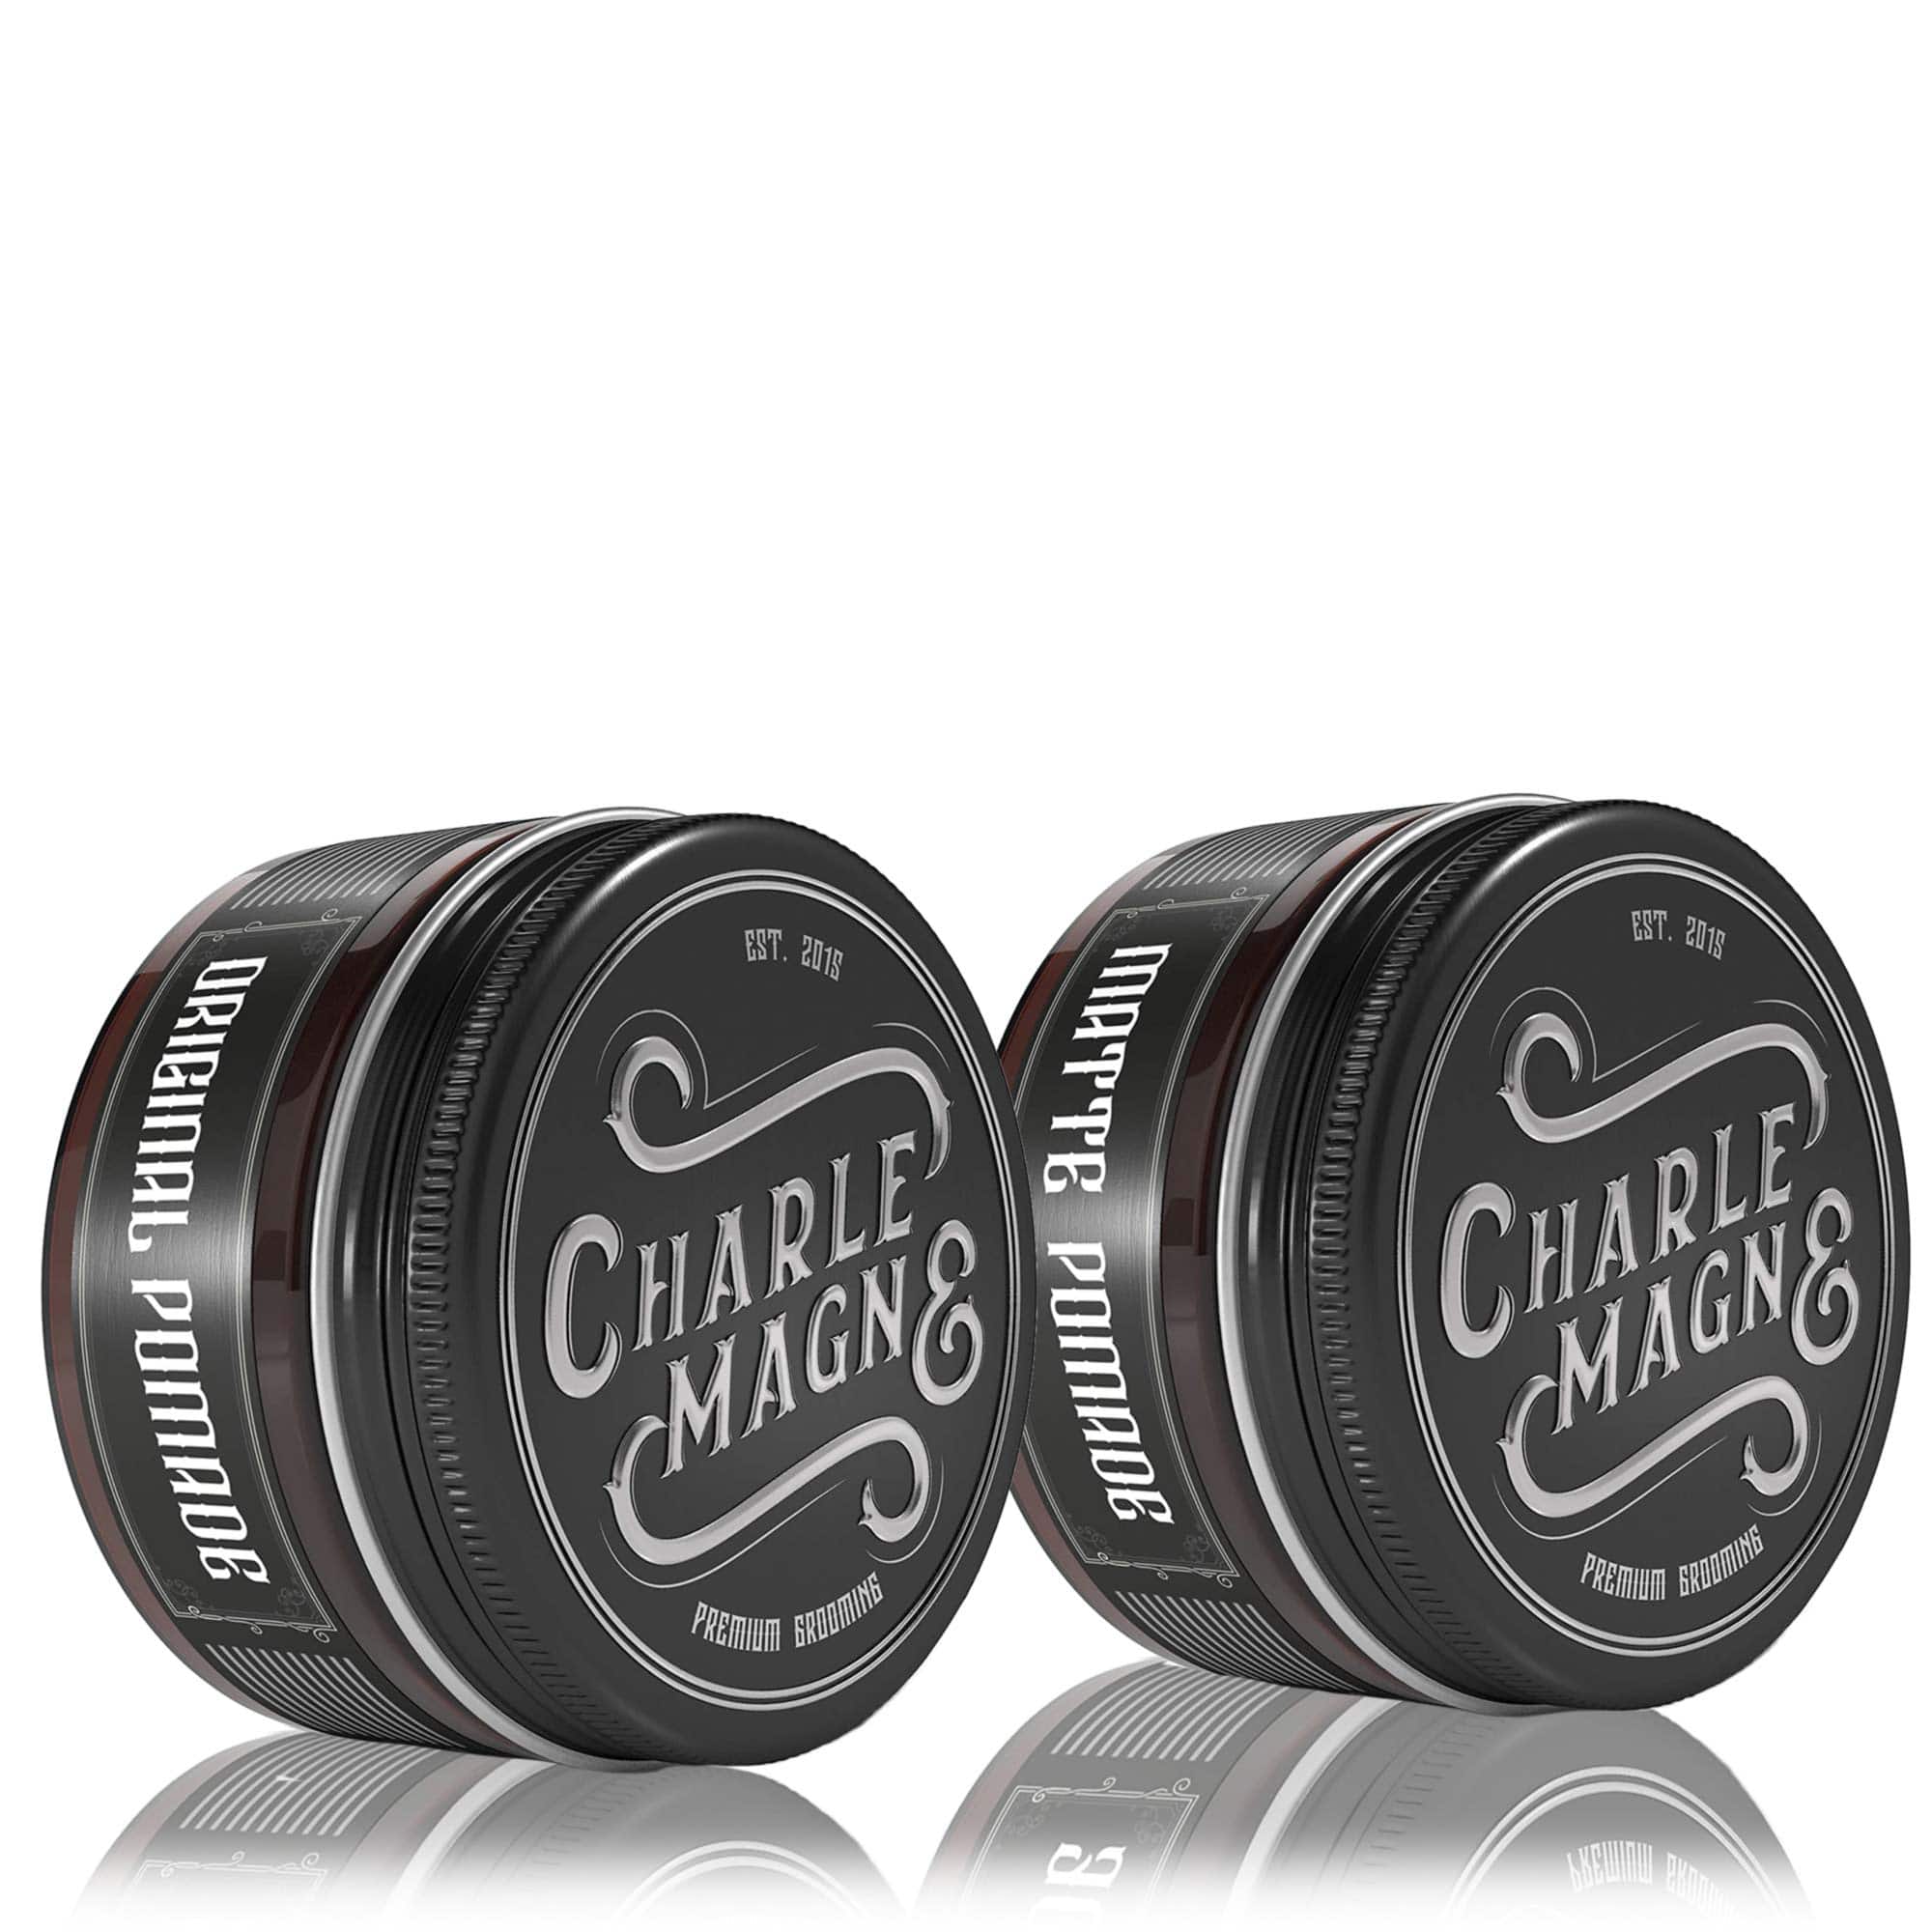 Charlemagne Premium • Haarstyling Bartpflege und Made in